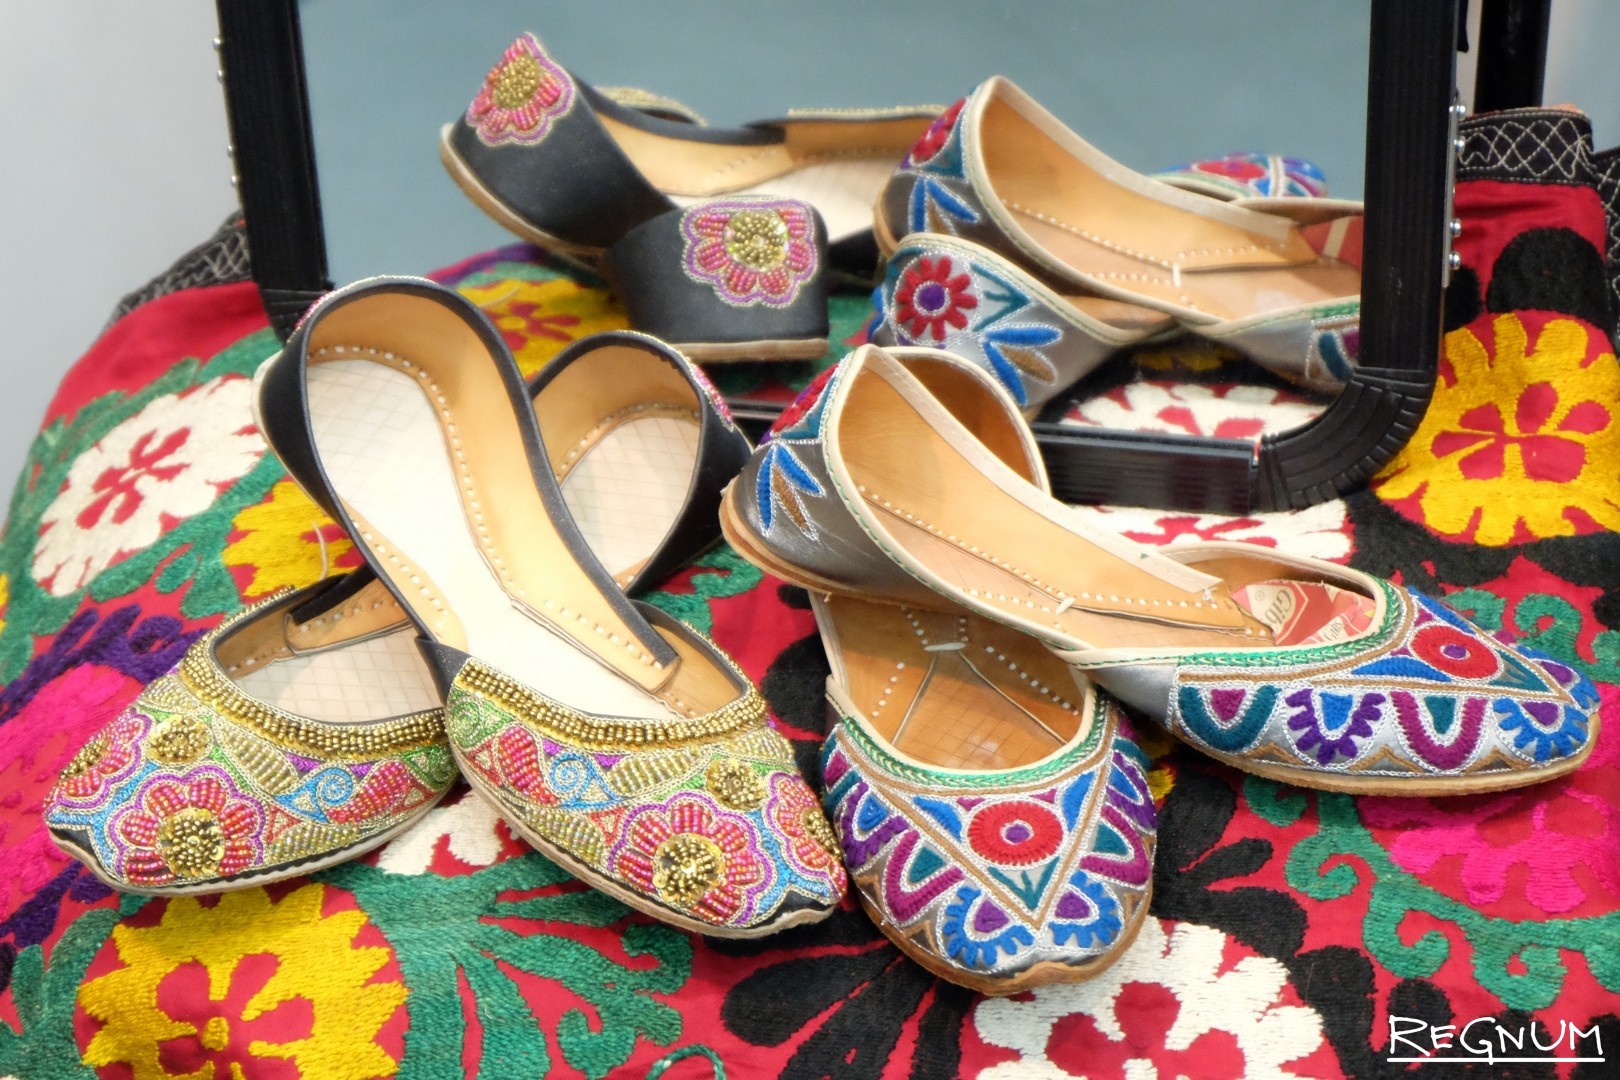 Узбекские товары. Узбекская обувь. Узбекистанские вещи. Узбекская женская обувь. Узбекская Национальная обувь.